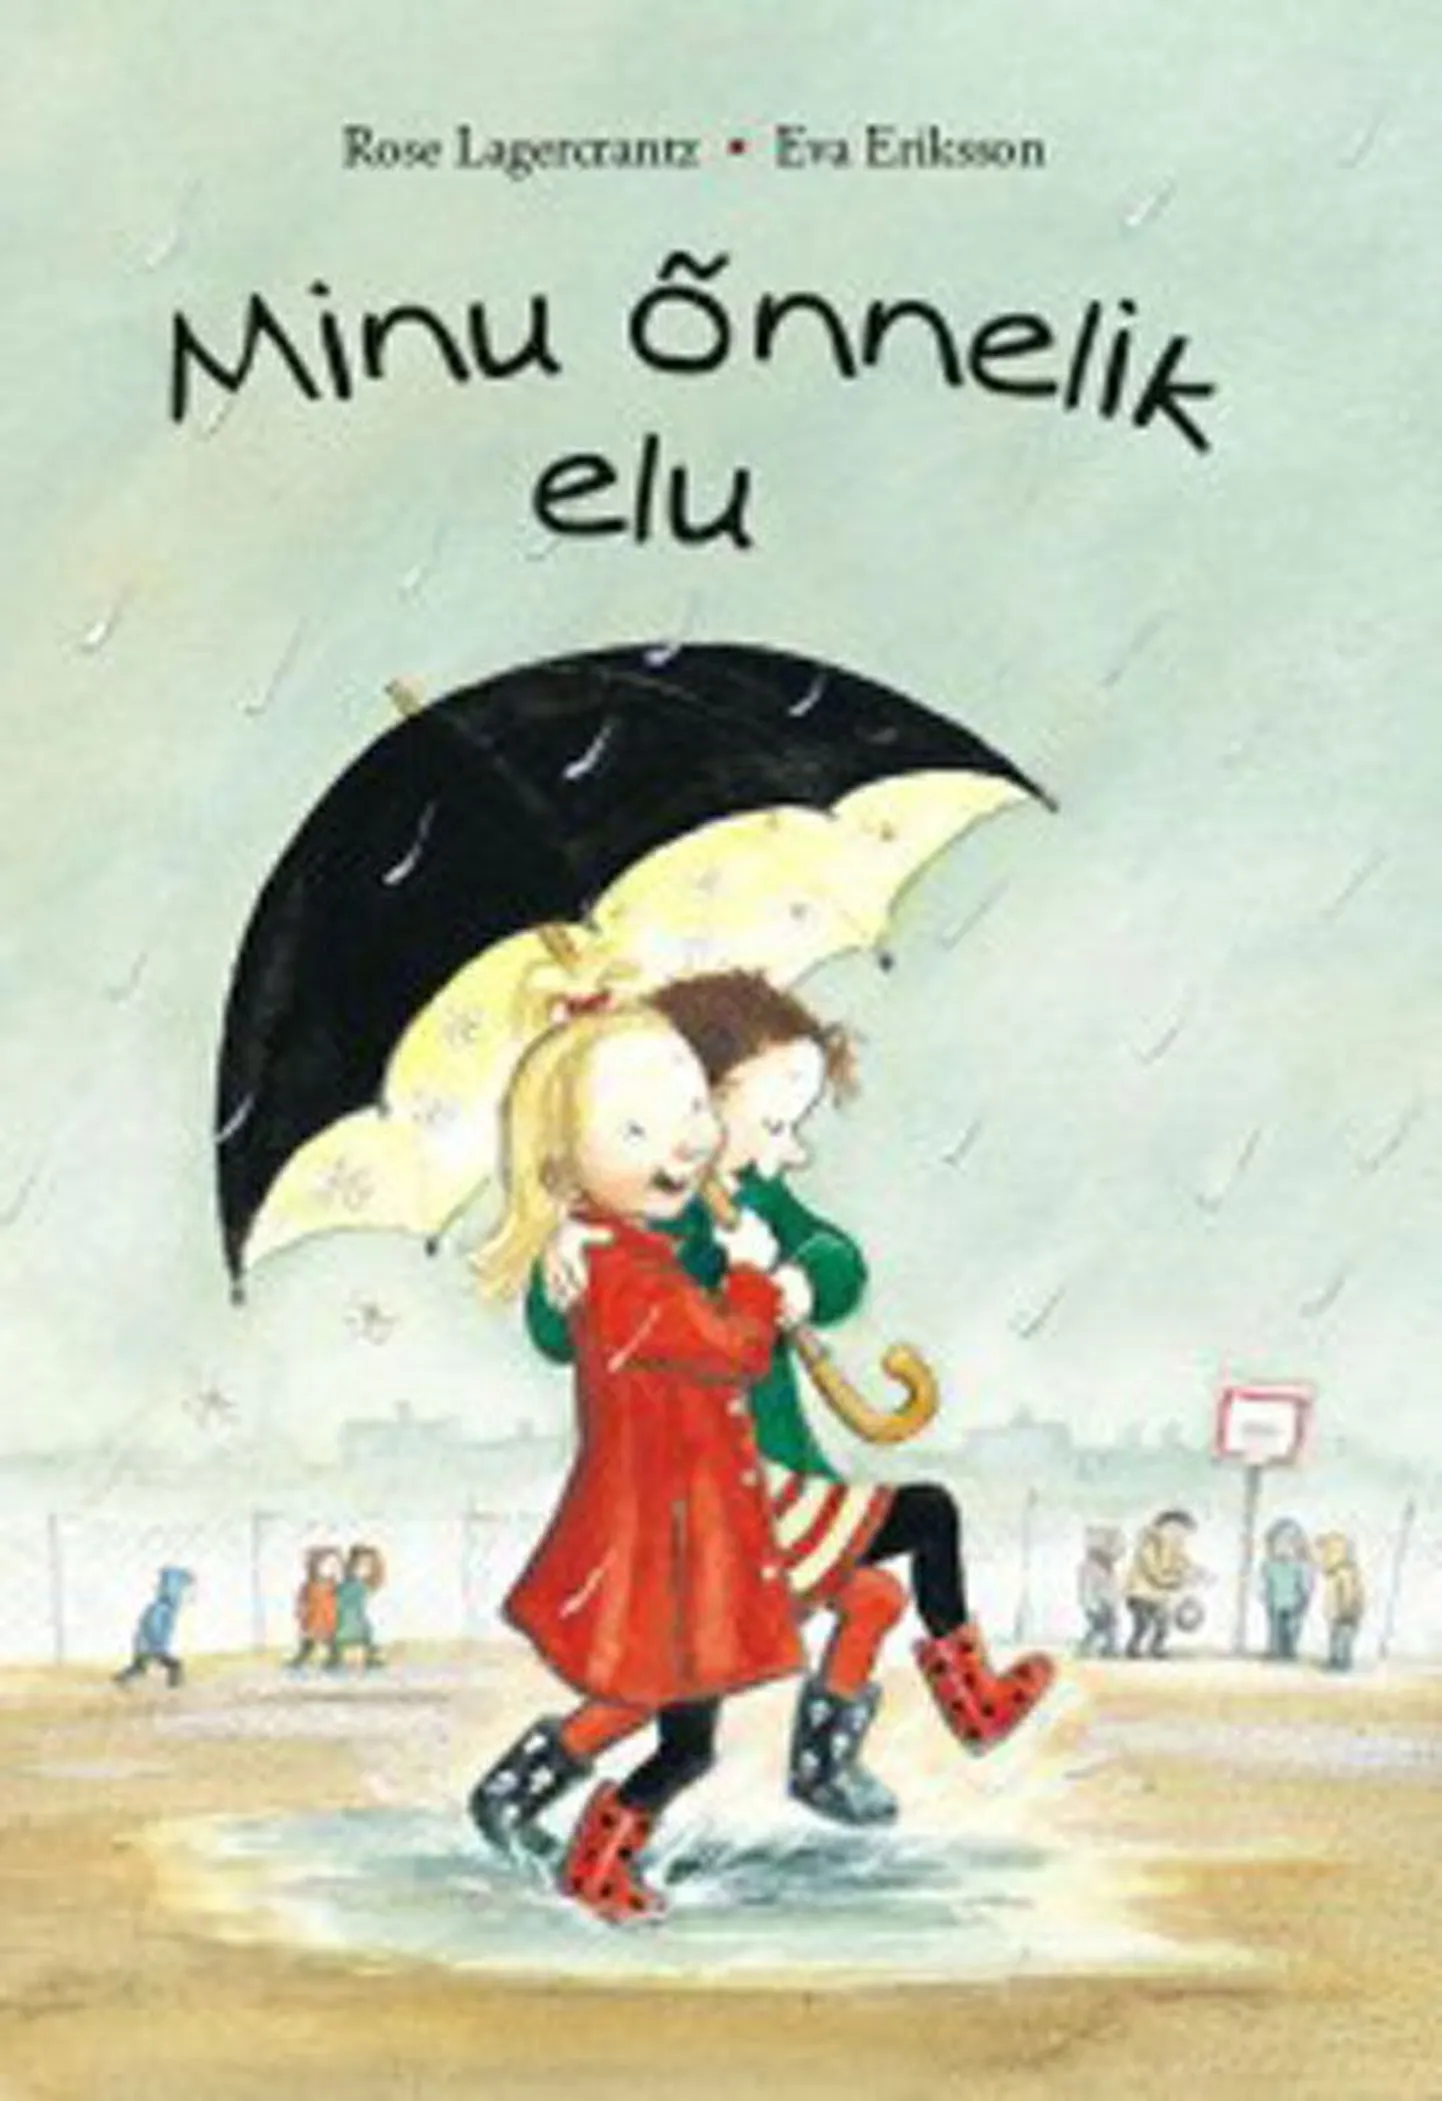 Raamat
Rose Lagercrantz
«Minu õnnelik elu»
Illustreerinud 
Eva Eriksson
Rootsi keelest tõlkinud 
Allar Sooneste
Tammerraamat, 2014